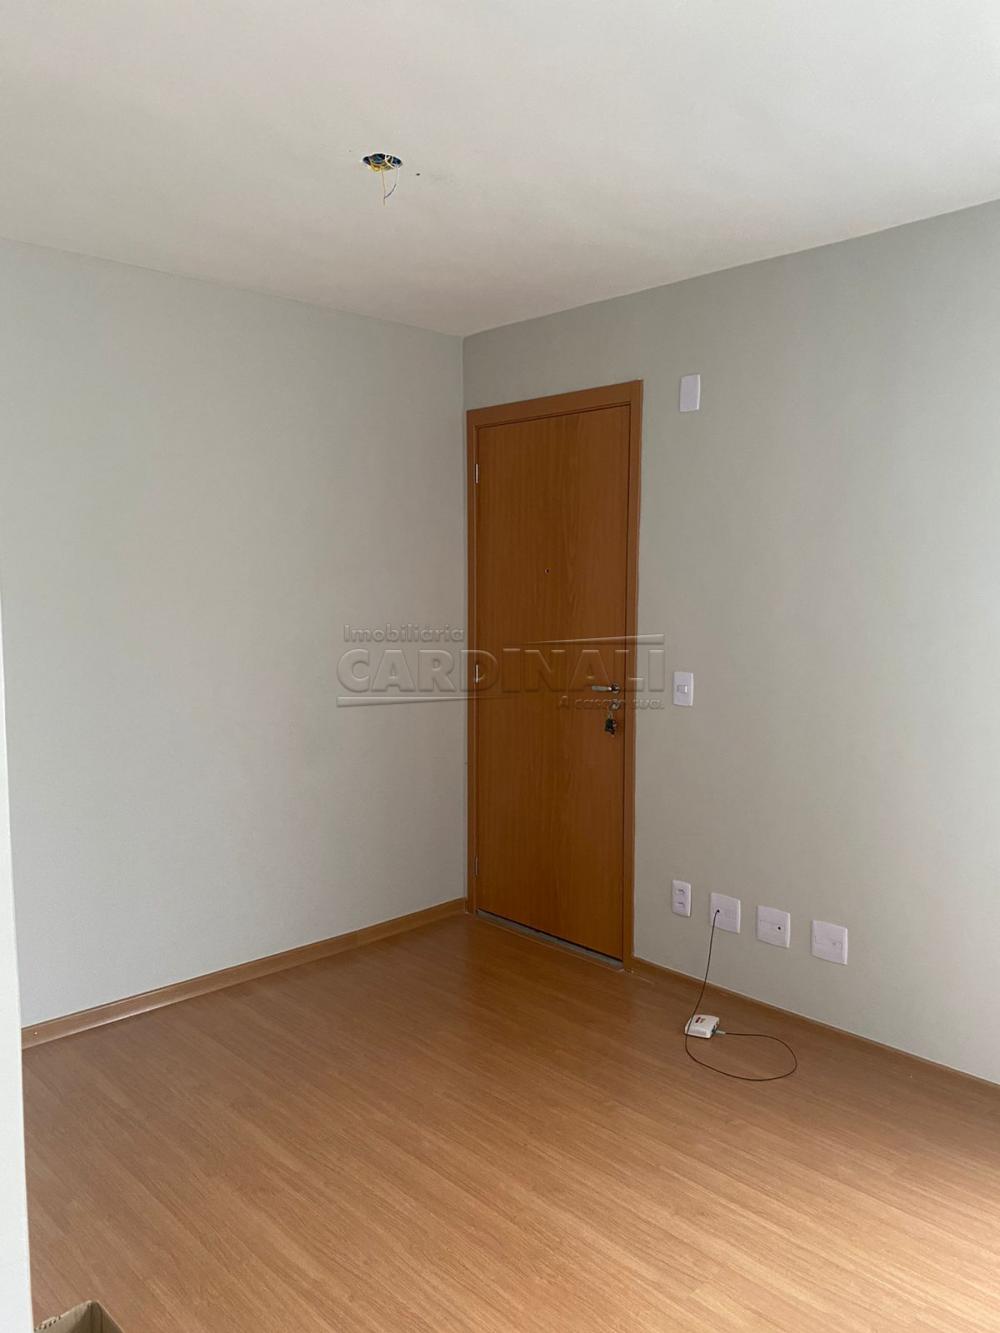 Comprar Apartamento / Padrão em São Carlos R$ 150.000,00 - Foto 6